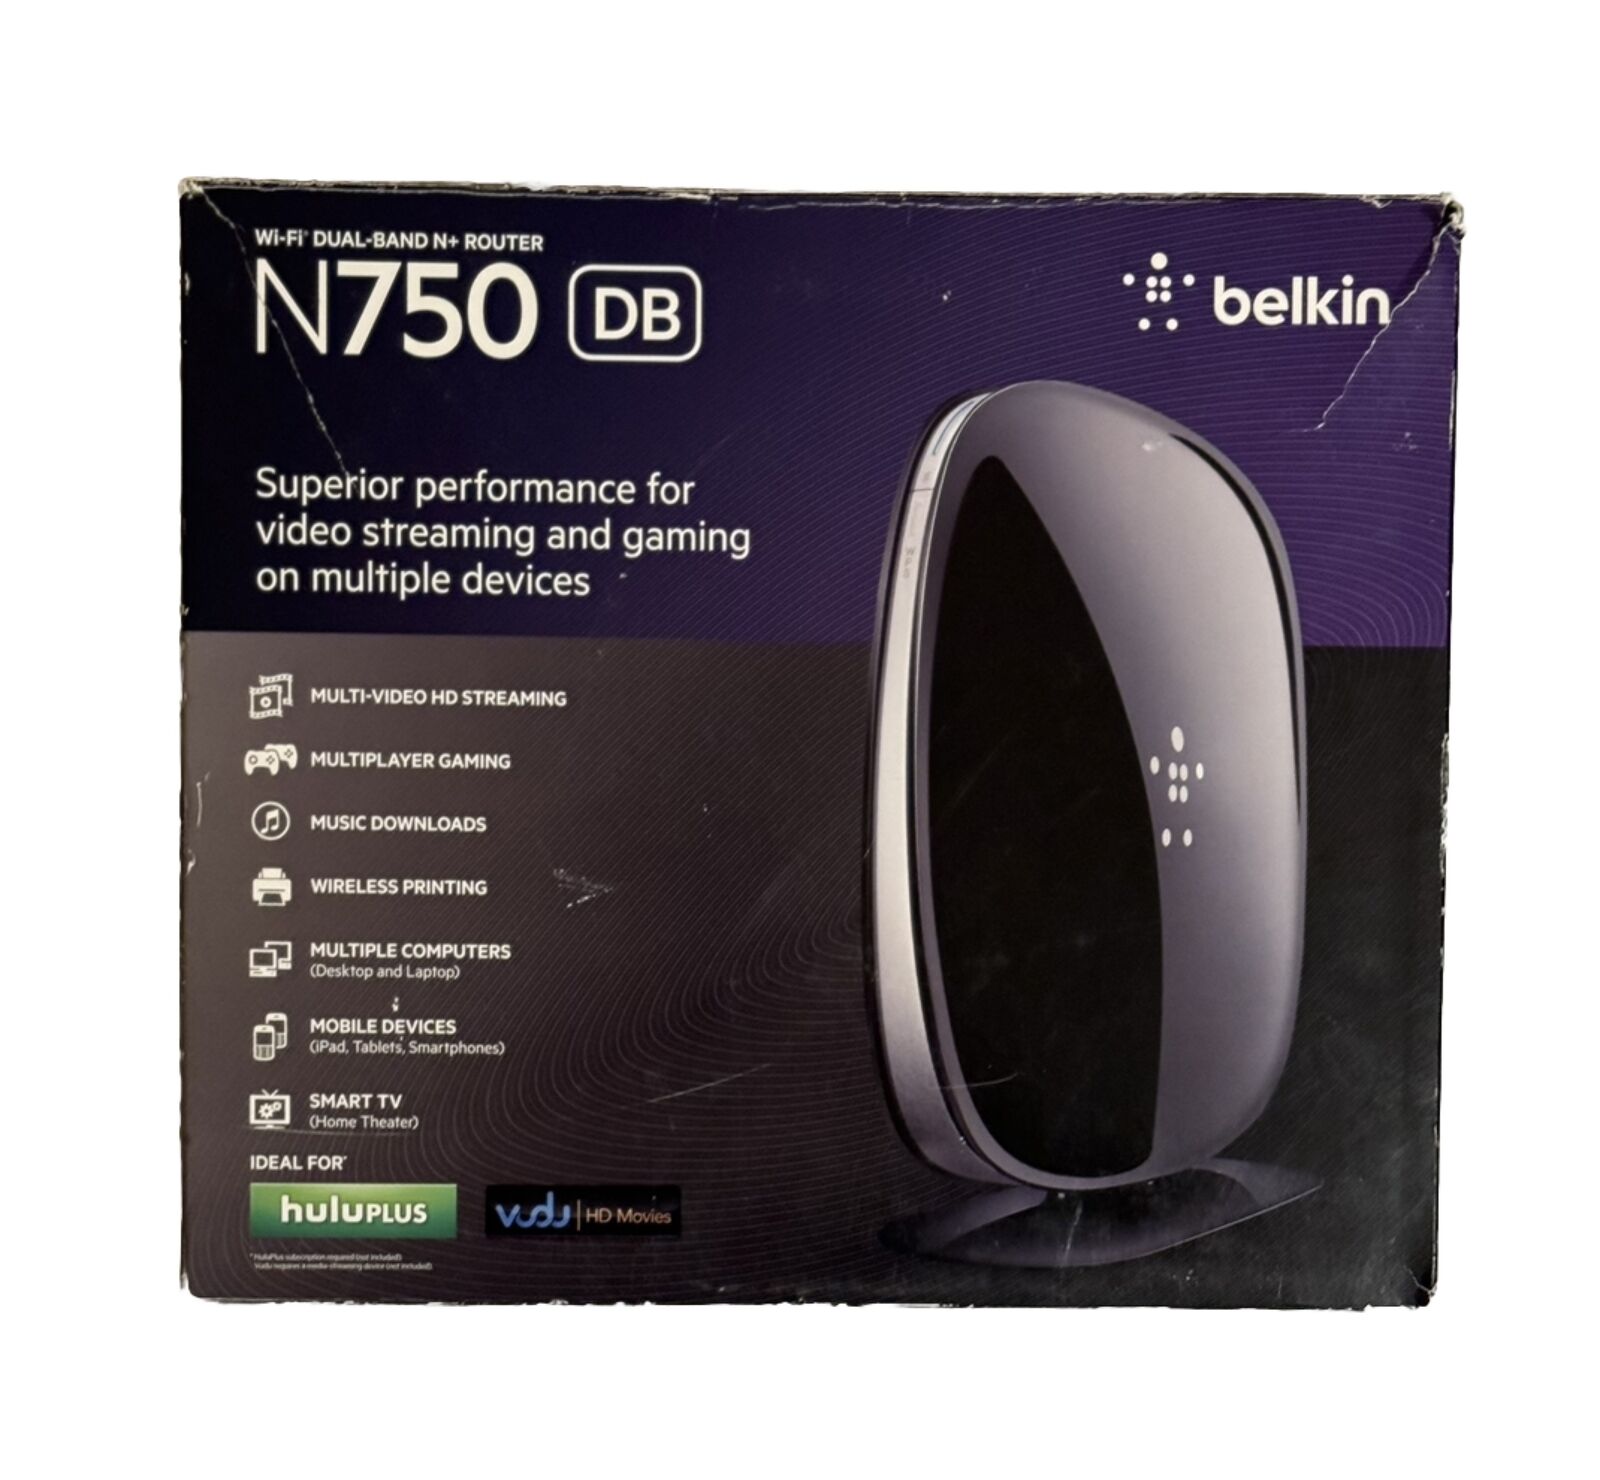 Belkin N750 DB 450 Mbps 4-Port Gigabit Wireless N Router